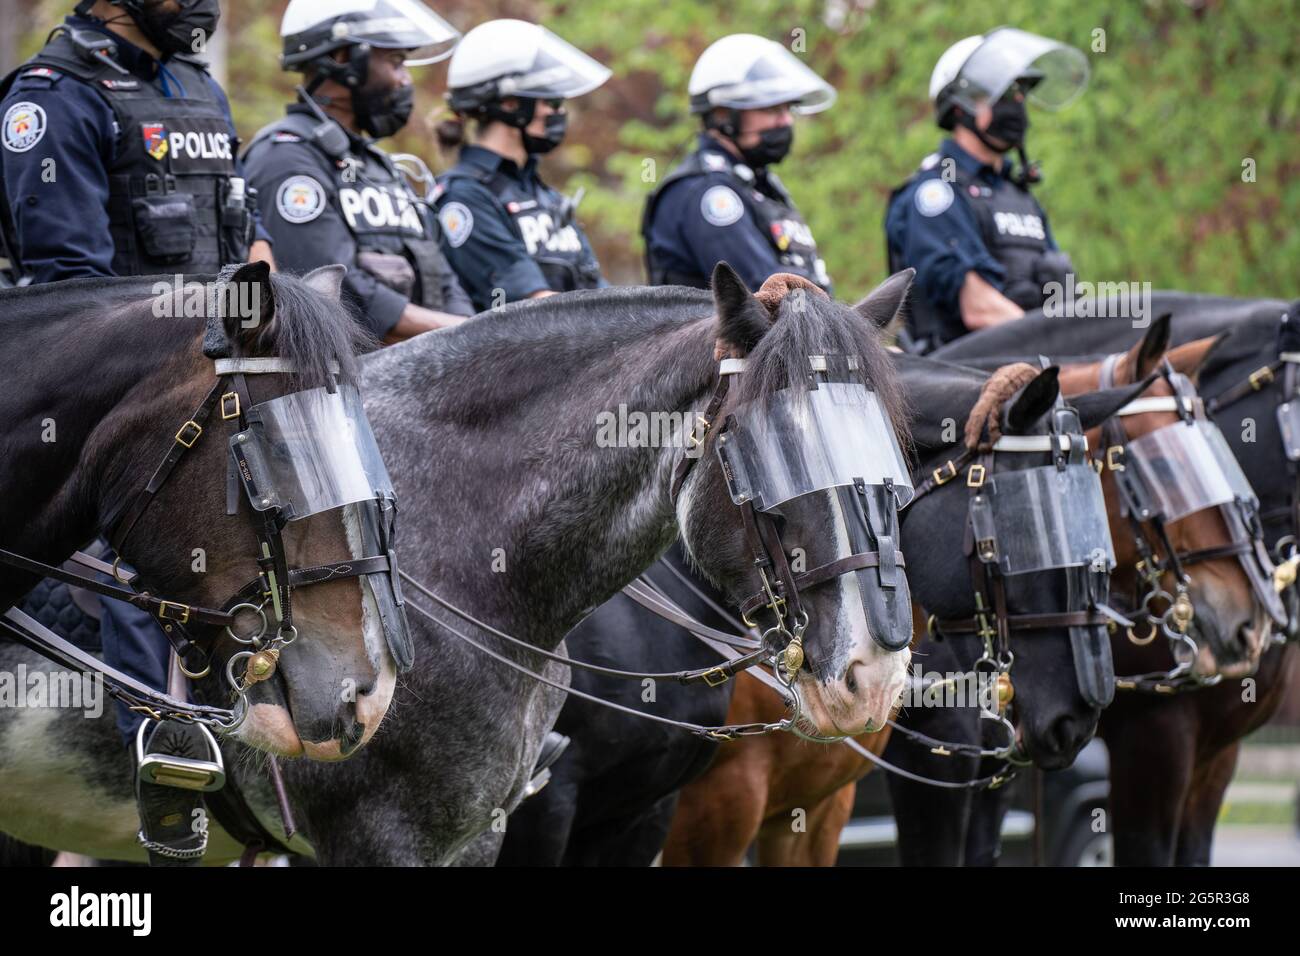 Des policiers en poste surveillent une manifestation anti-verrouillage à Queen's Park, à Toronto, en Ontario. Banque D'Images